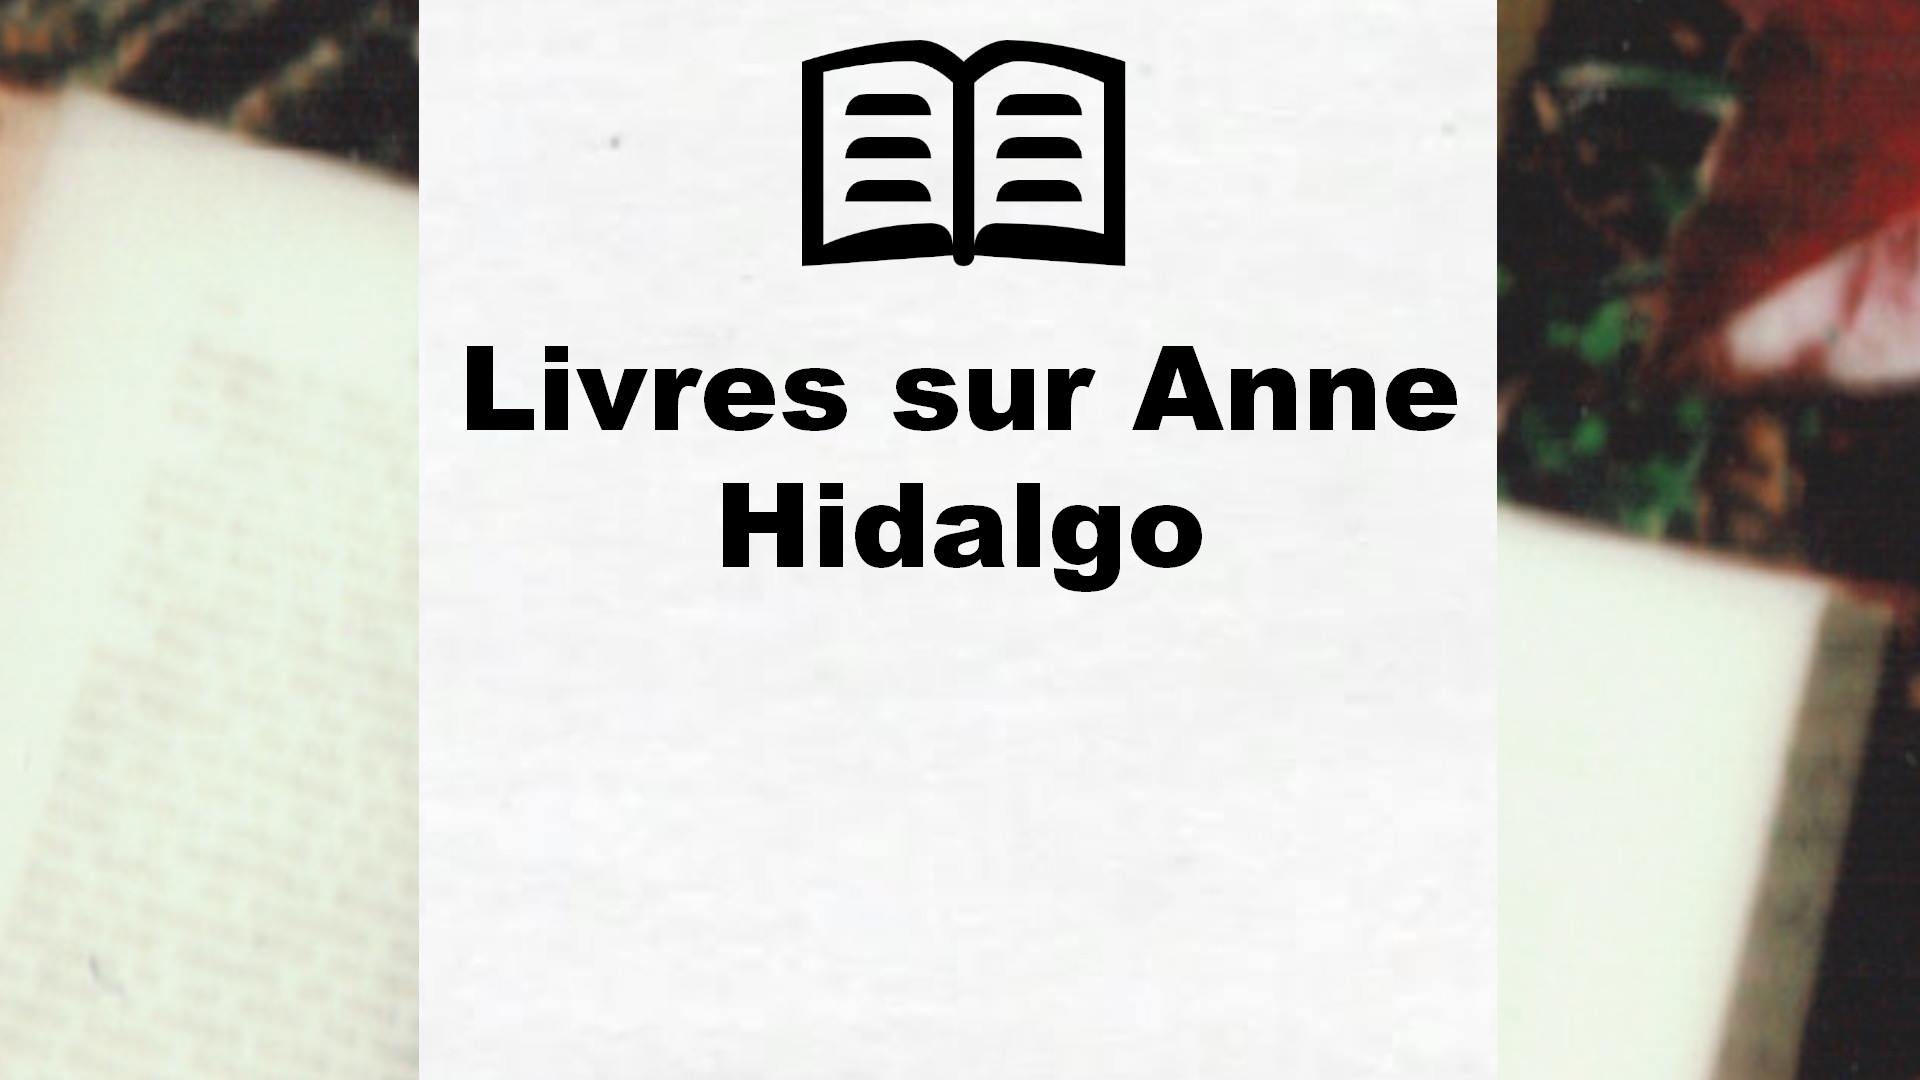 Livres sur Anne Hidalgo